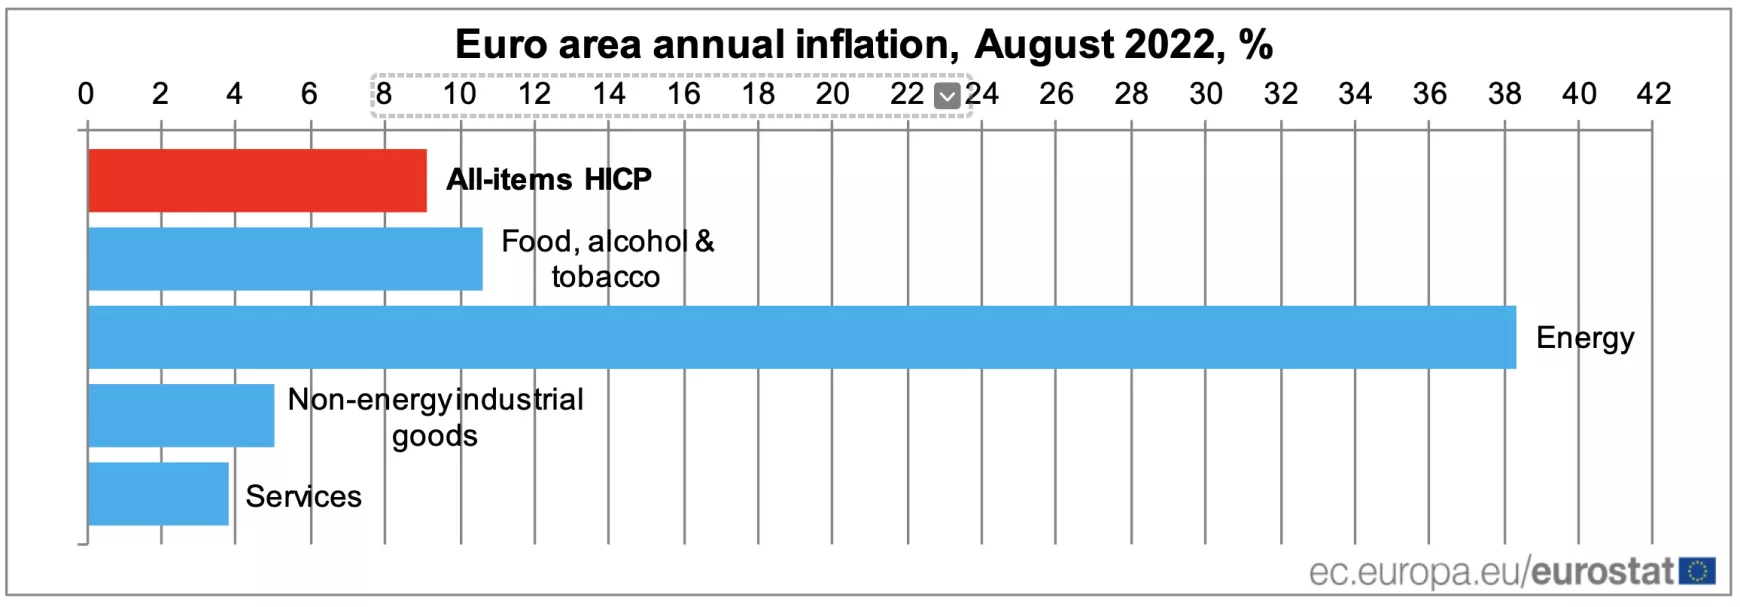 Mi pörgette az inflációt augusztusban?